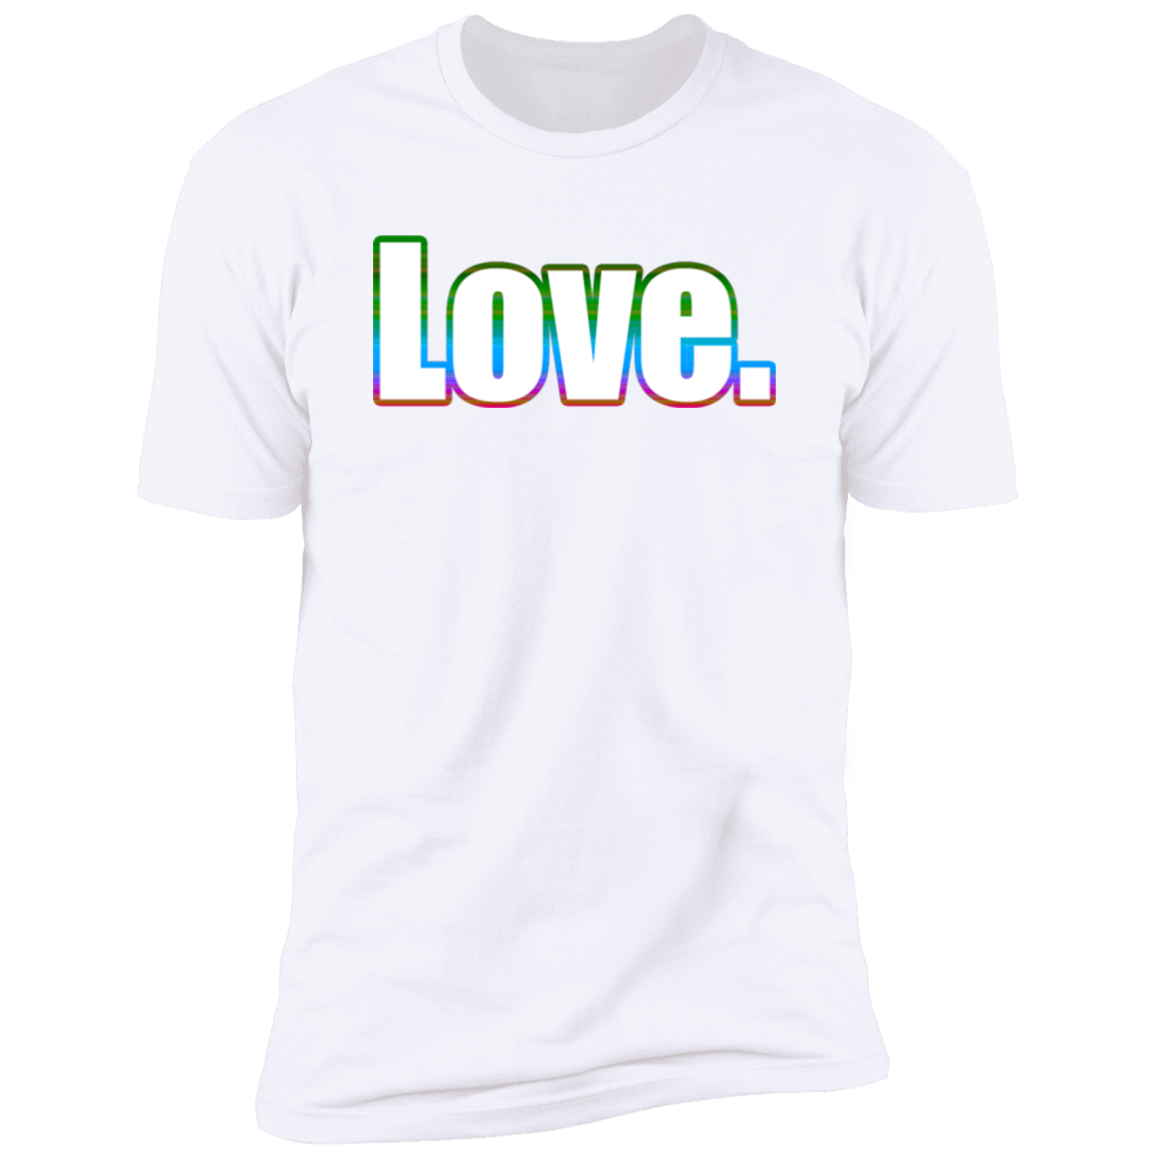 Love Shirt (White Rainbow Graphic)